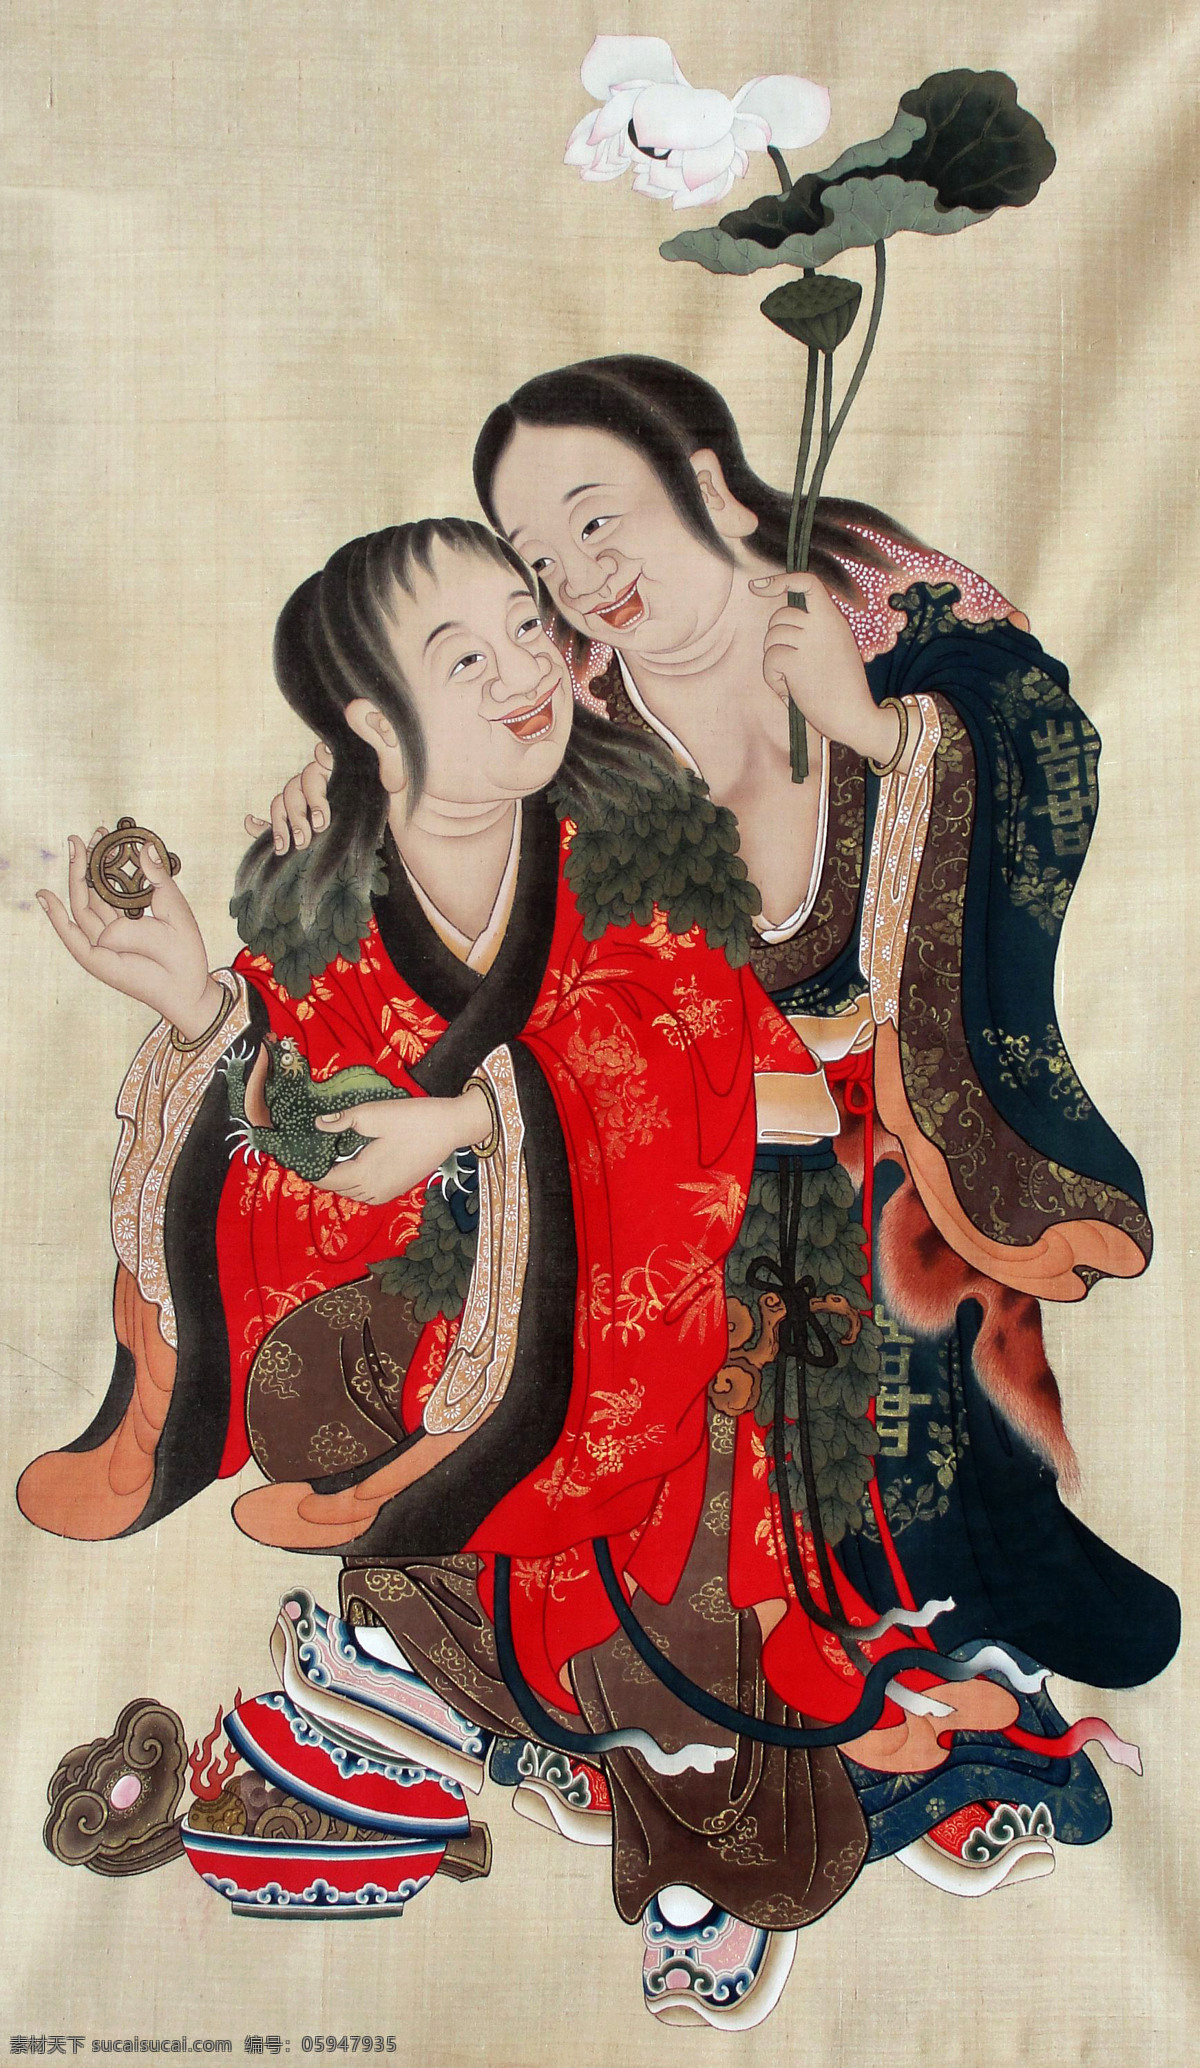 和合二仙 美术 中国画 神话人物 神仙 仙人 荷花 国画艺术 国画集85 绘画书法 文化艺术